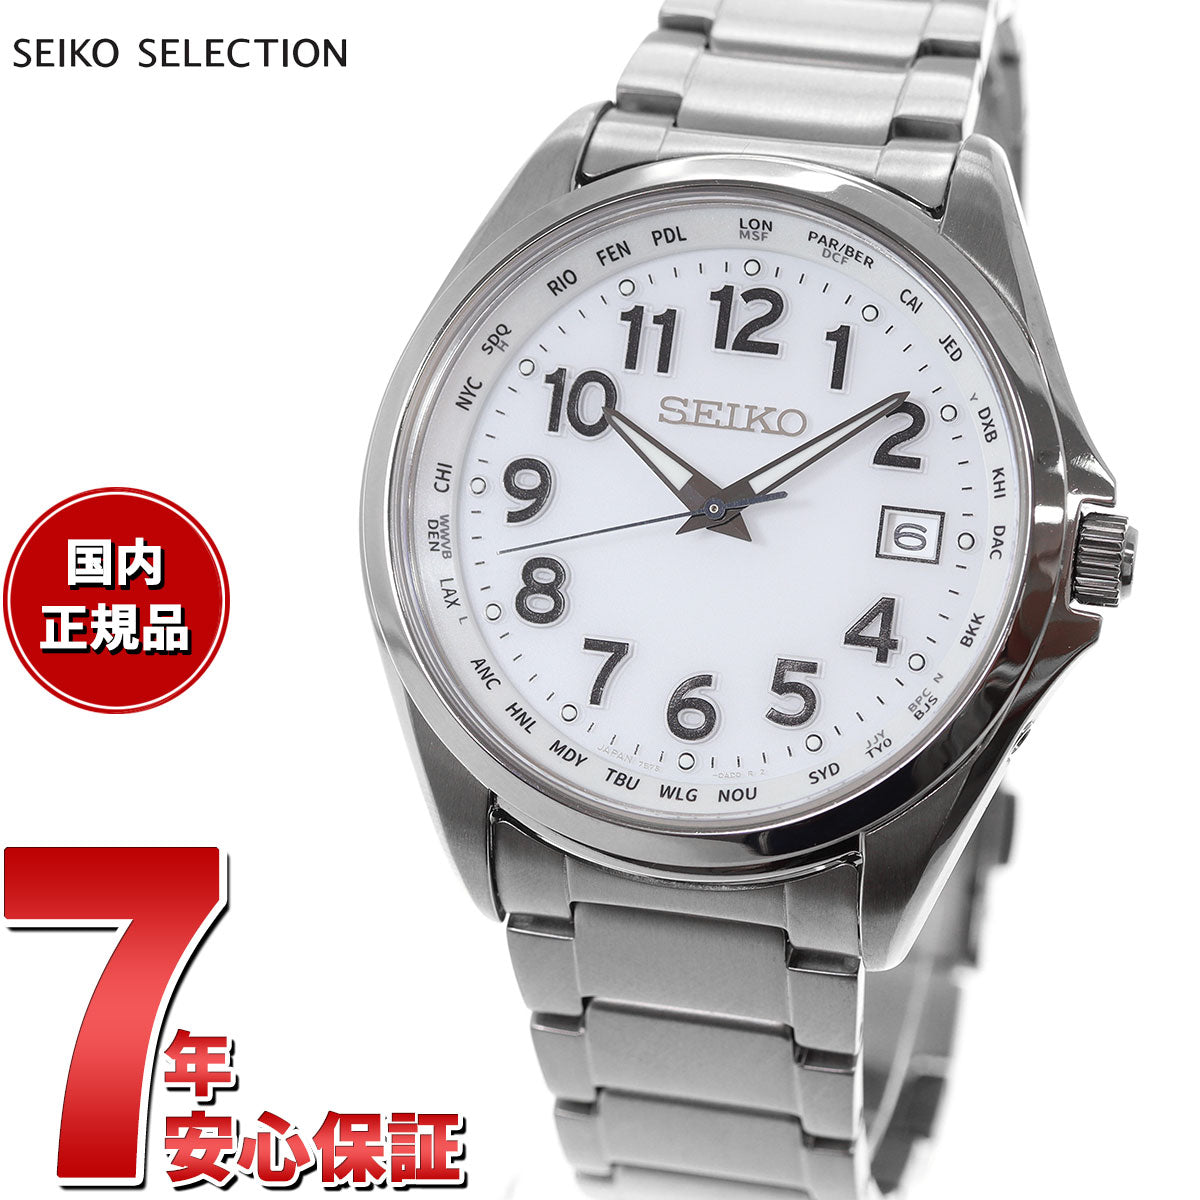 セイコー セレクション SBTM327 メンズ 腕時計 ソーラー電波 ワールドタイム アラビア数字 ホワイト